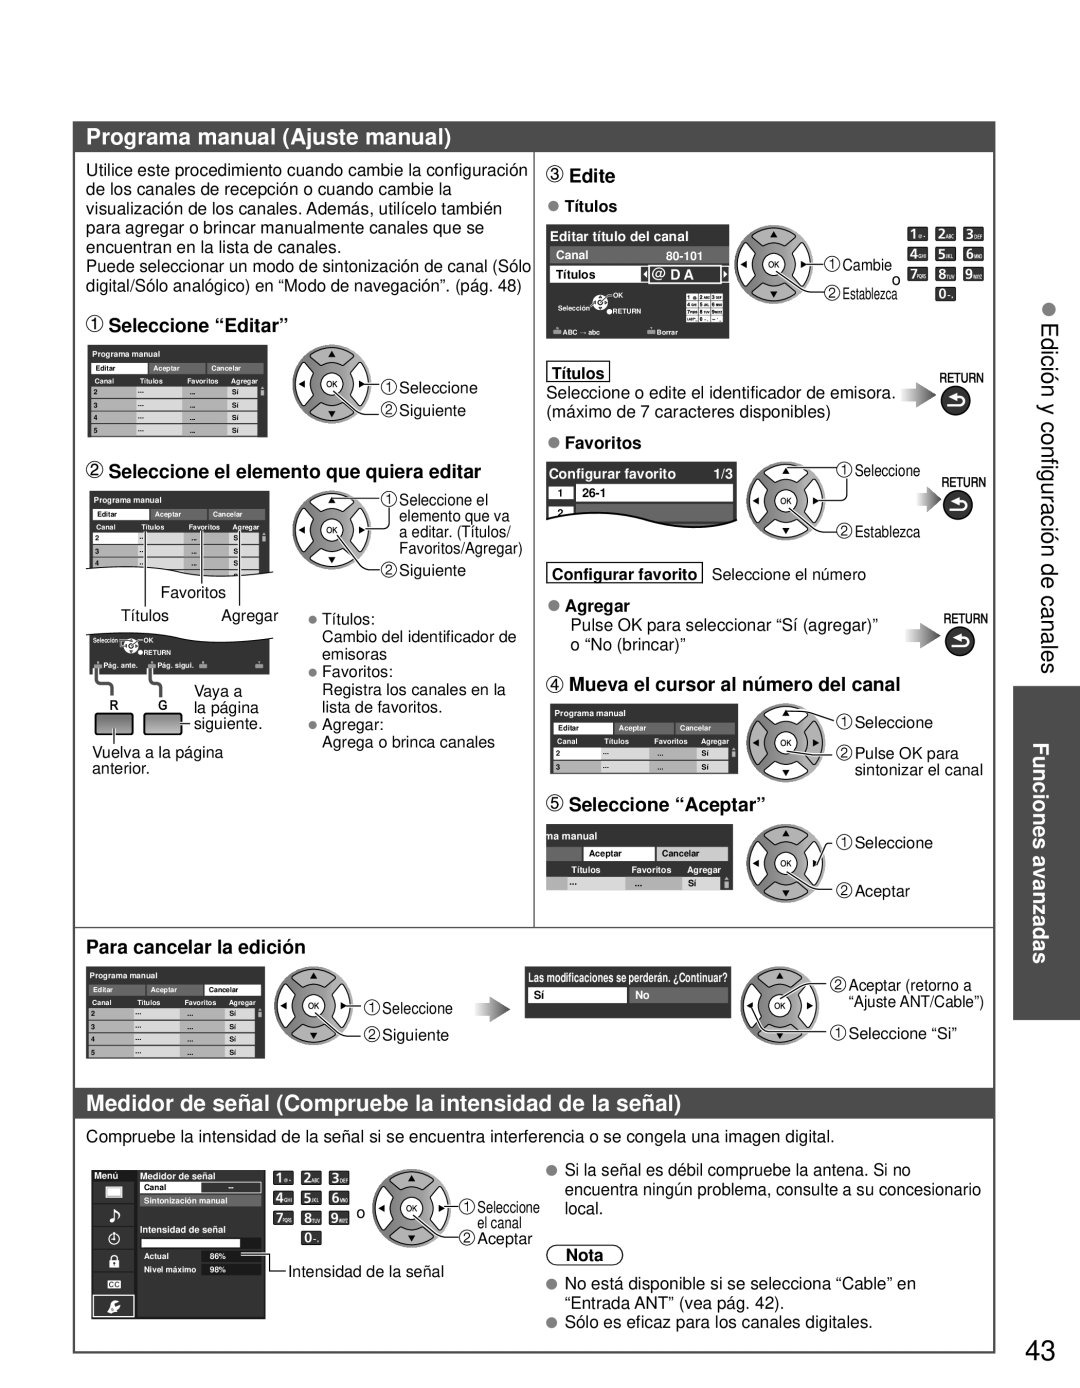 Panasonic TC-L42E3 Programa manual Ajuste manual, Edición y, Medidor de señal Compruebe la intensidad de la señal, Edite 